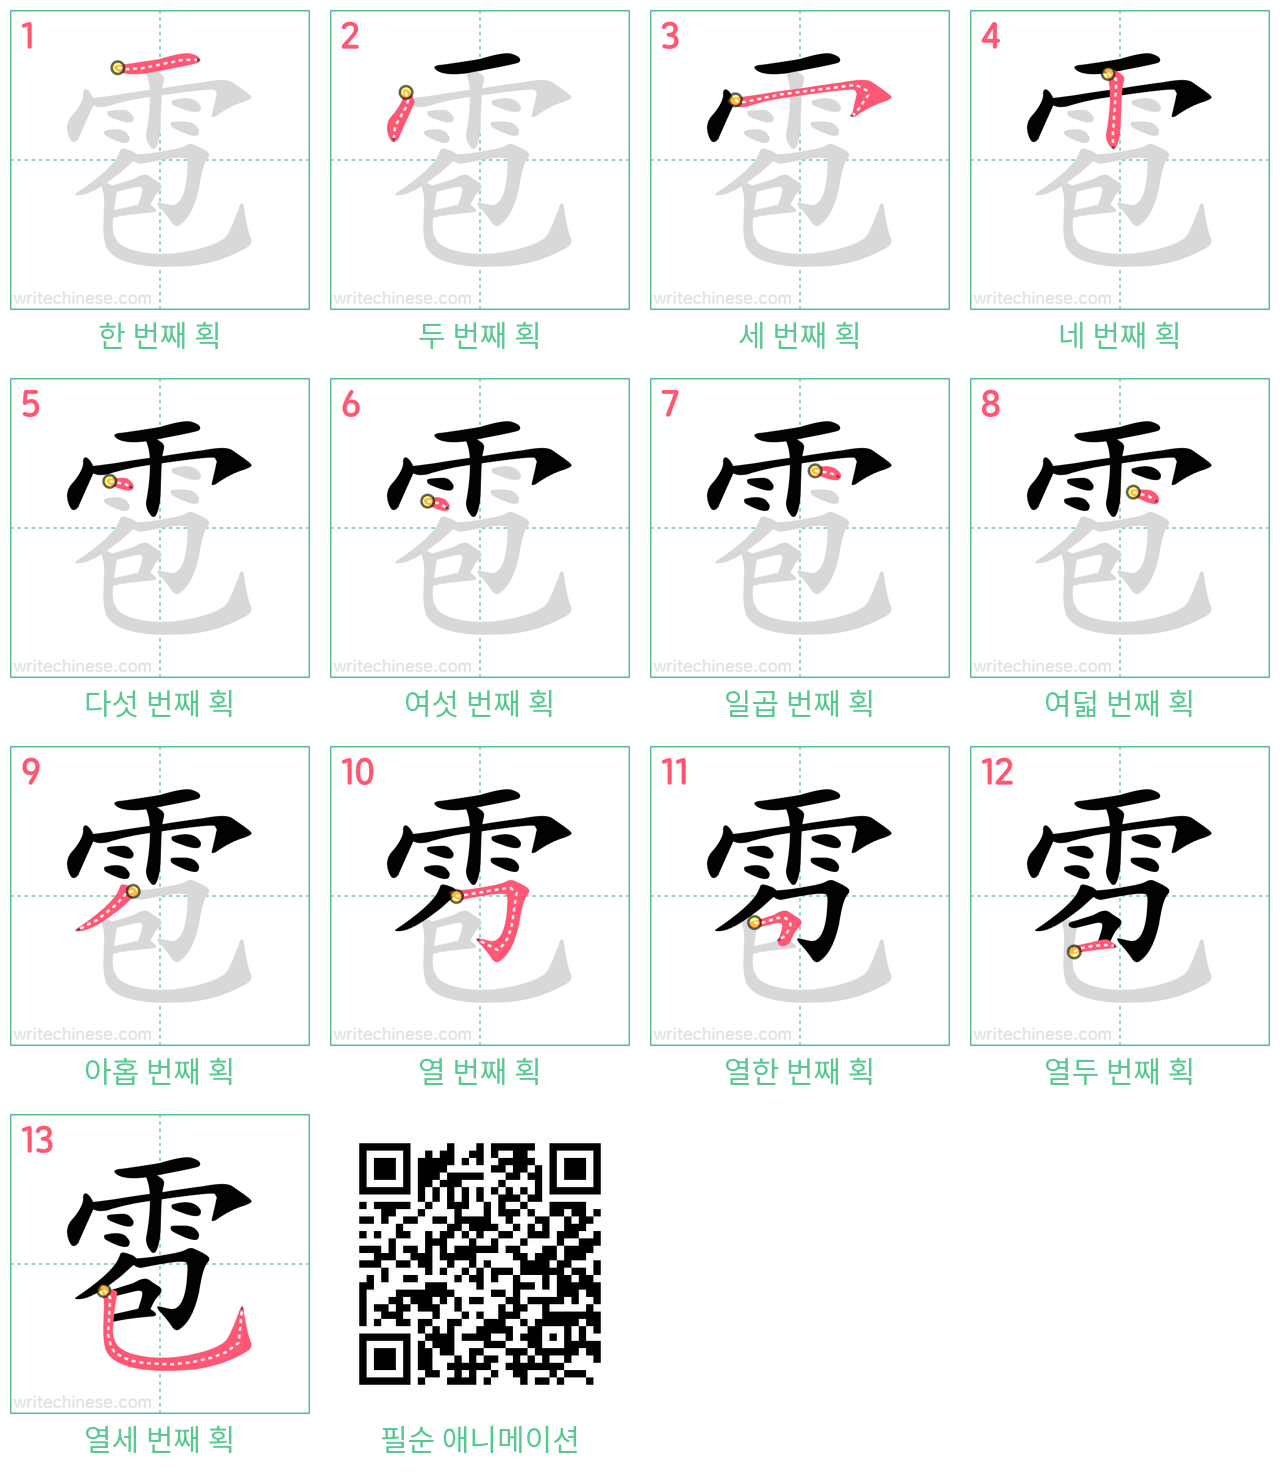 雹 step-by-step stroke order diagrams